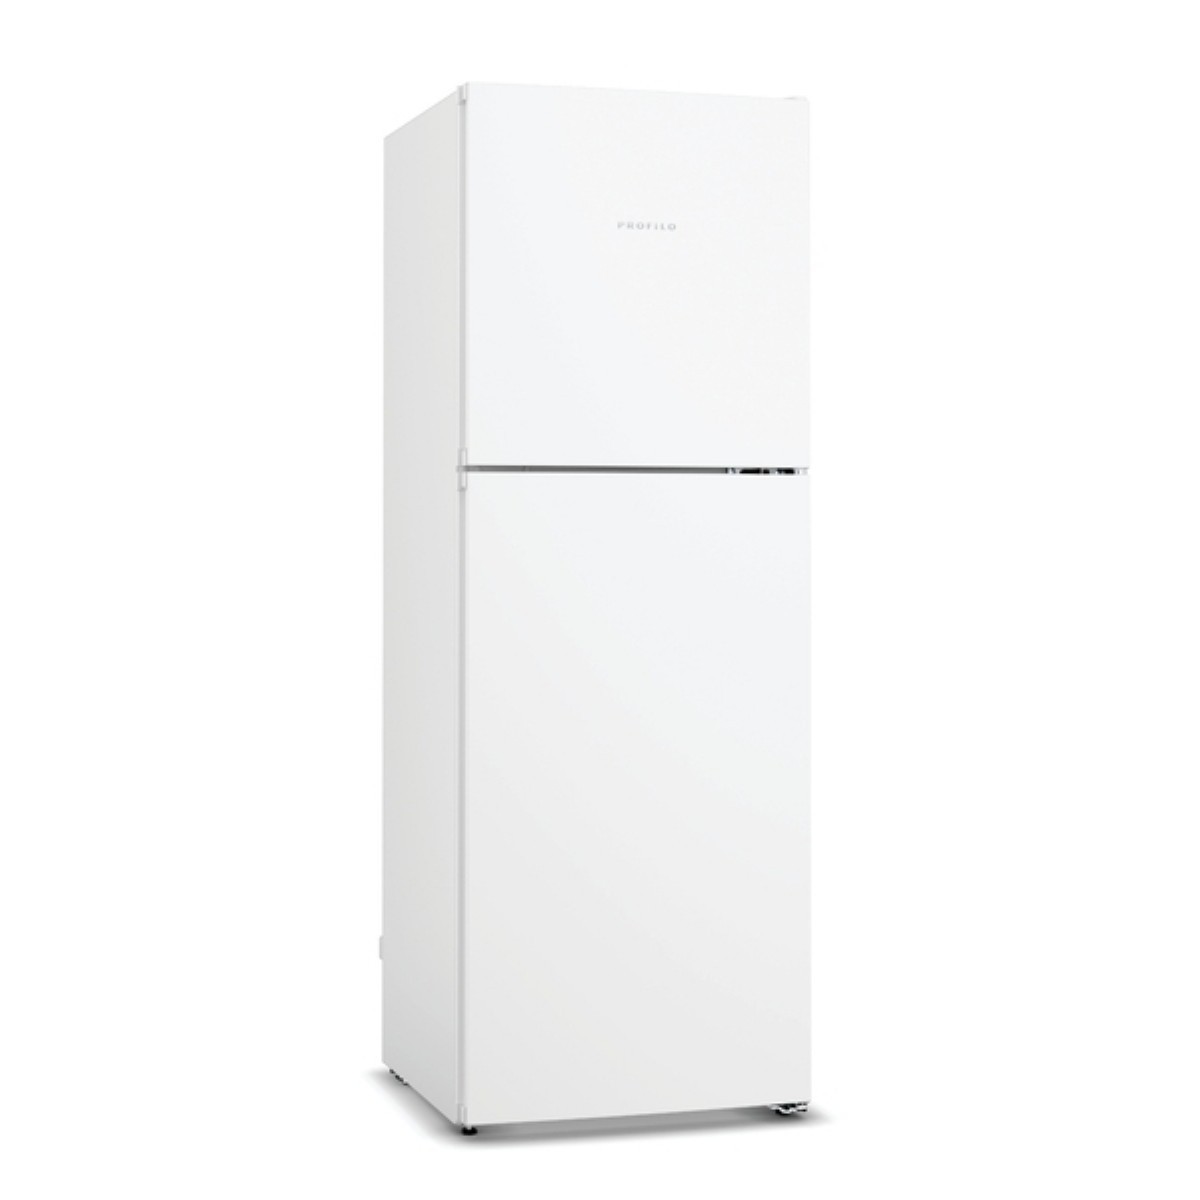 Buzdolabı | Profilo BD2030WFNN Çift Kapılı No Frost Buzdolabı | BD2030WFNN | Profilo BD2030WFNN Çift Kapılı No Frost Buzdolabı, BD2030WFNN, profilo küçük buzdolabı, profilo en ucuz buzdolabı, bd2030 fiyat | 